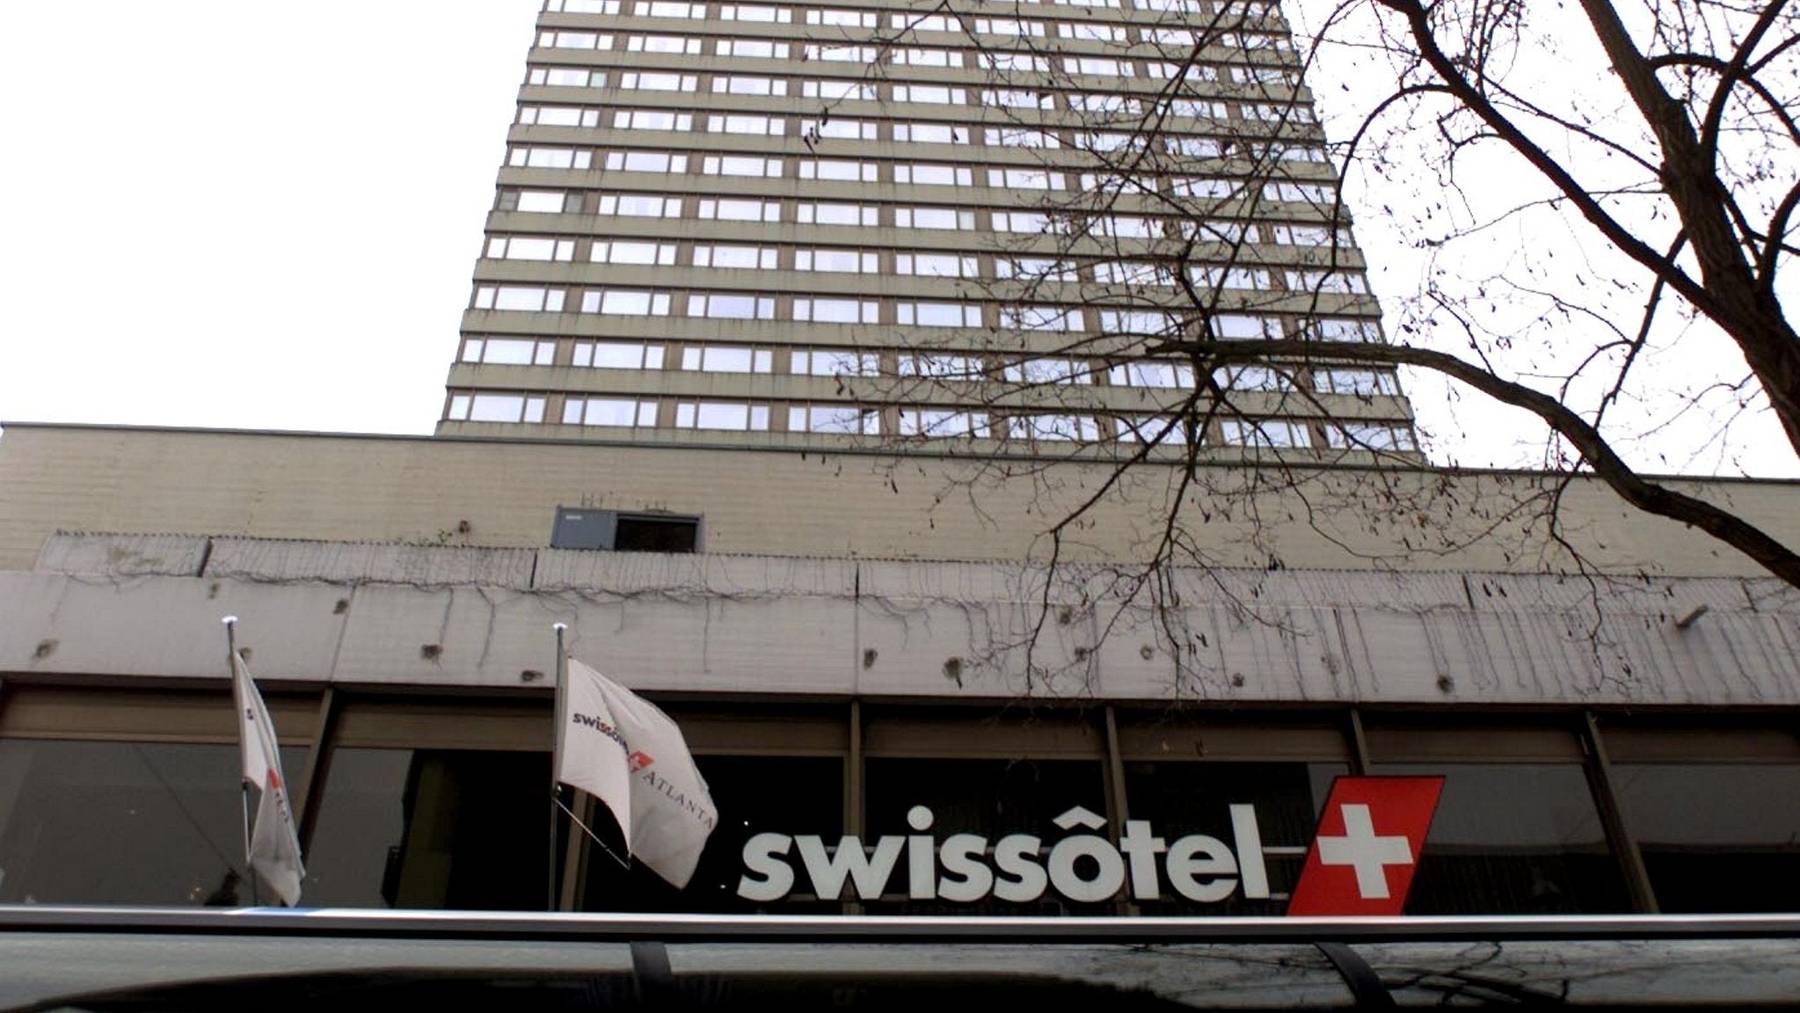 Die Marke Swissôtel ist seit 2016 in Besitz der Hotelkette Accor. Dies prüft nun eine Teilschliessung des Hotels in Zürich Oerlikon.